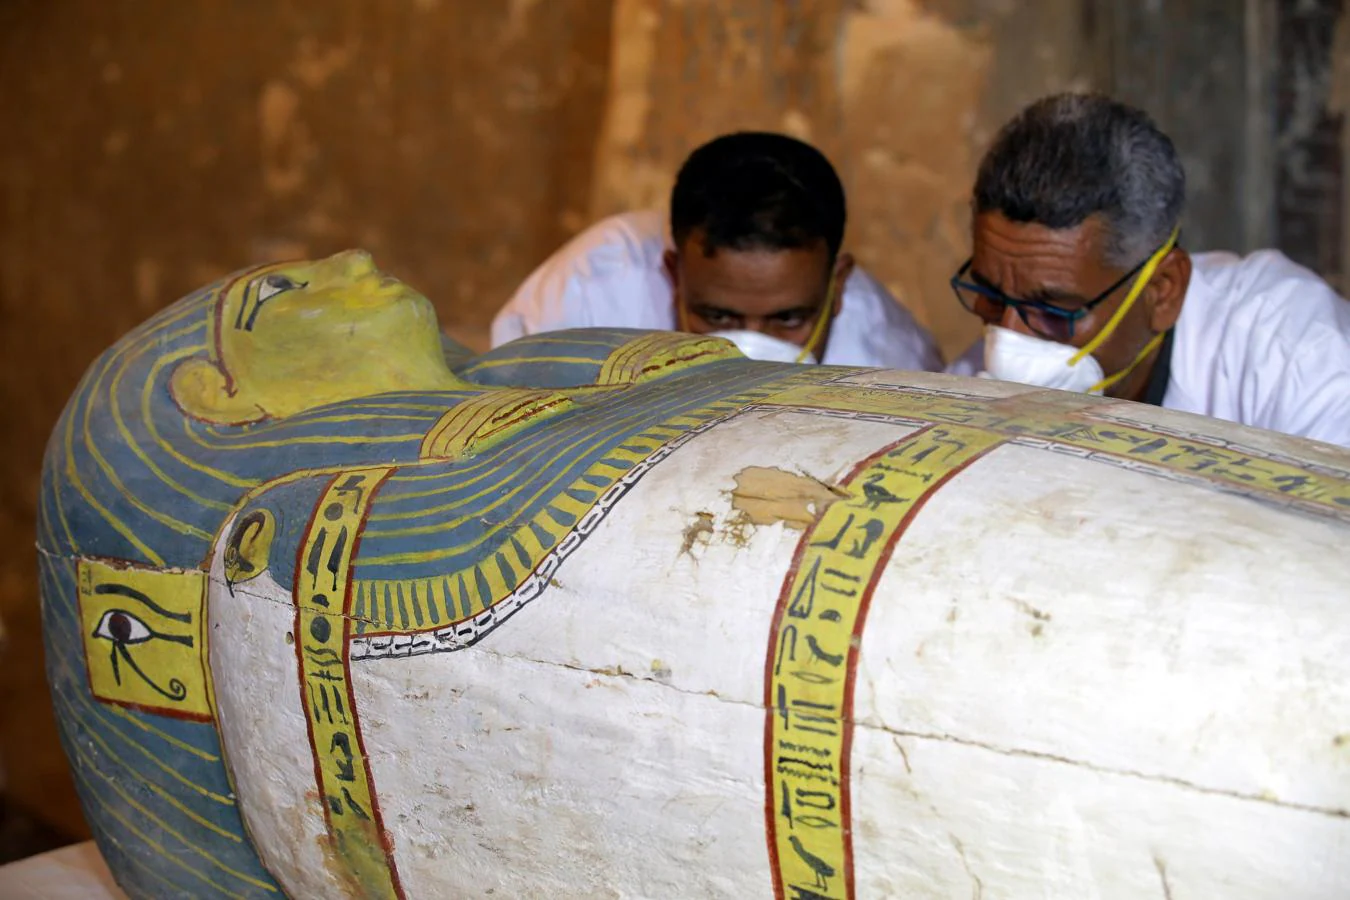 La apertura del sarcófago de una momia egipcia intacta de hace 3.000 años, paso a paso